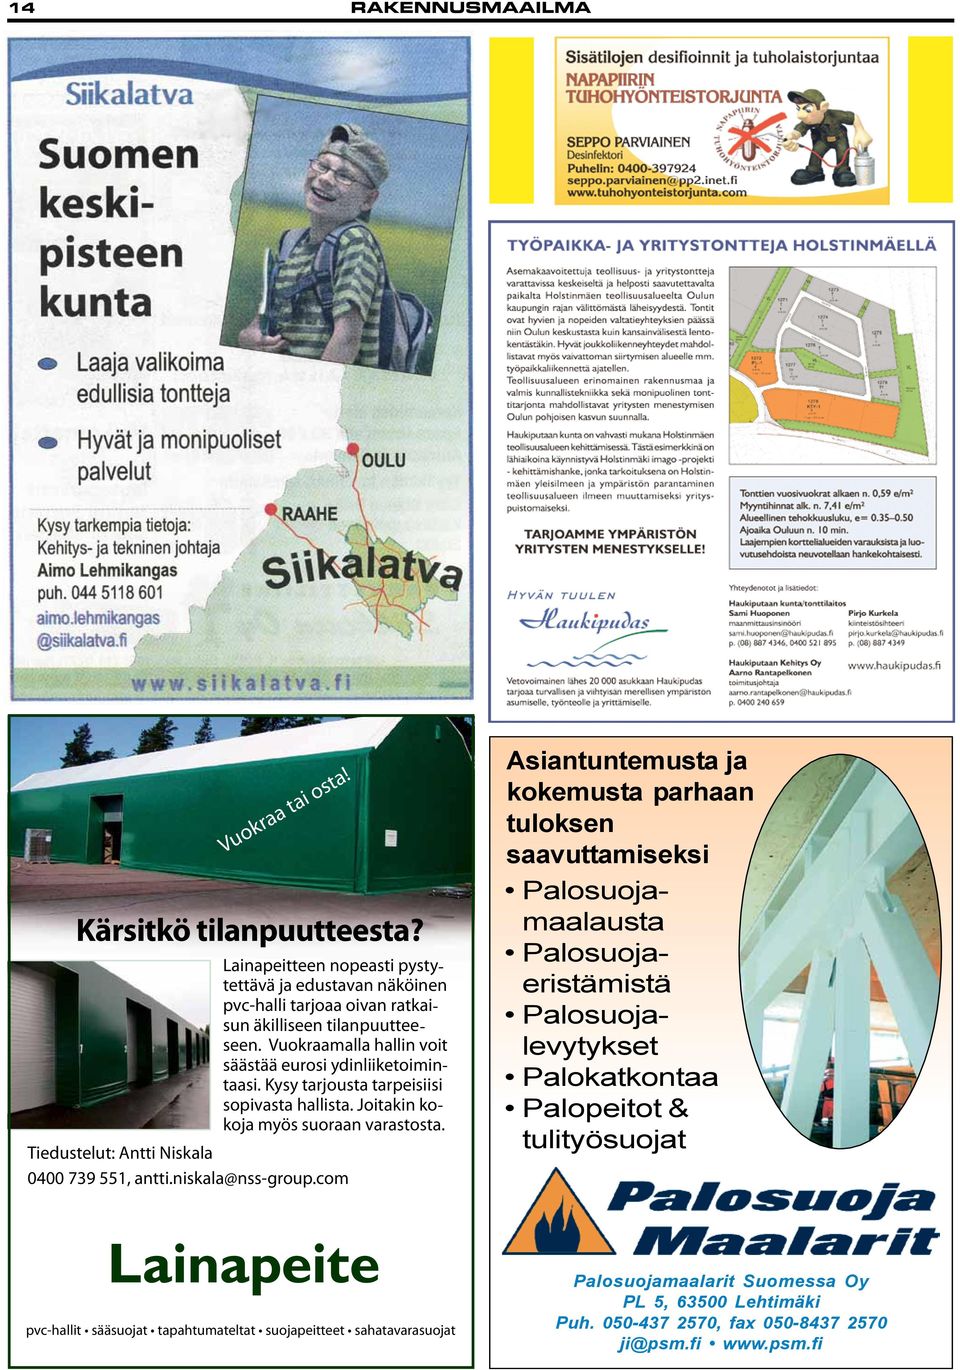 Tiedustelut: Antti Niskala 0400 739 551, antti.niskala@nss-group.